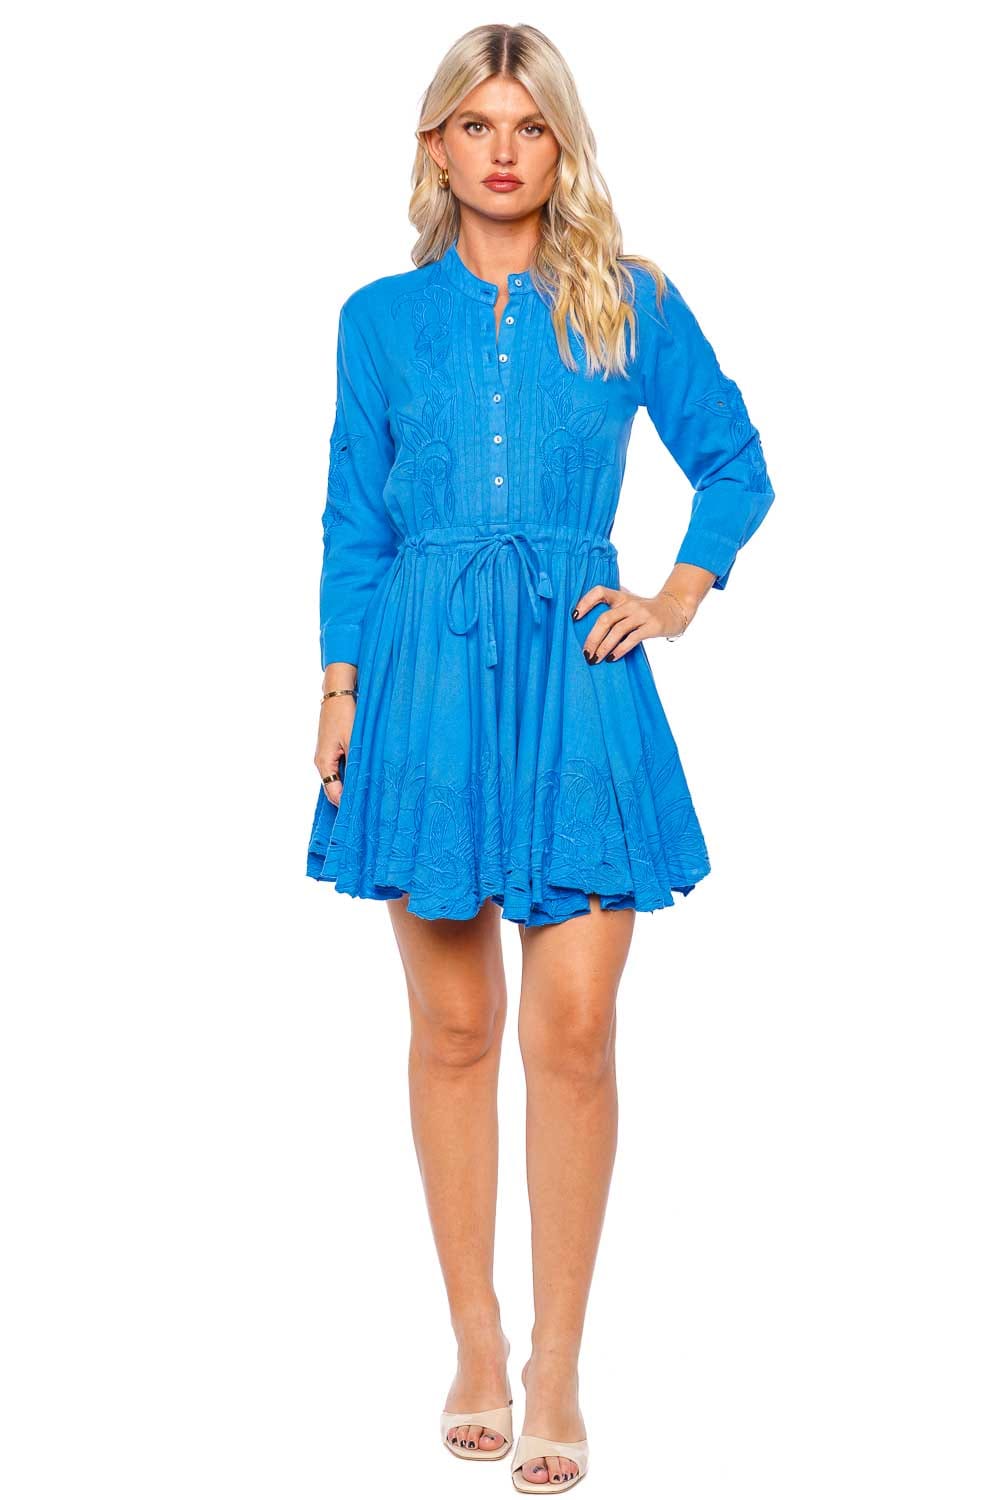 JULIET DUNN Klein Blue Embroidered Mini Beach Dress